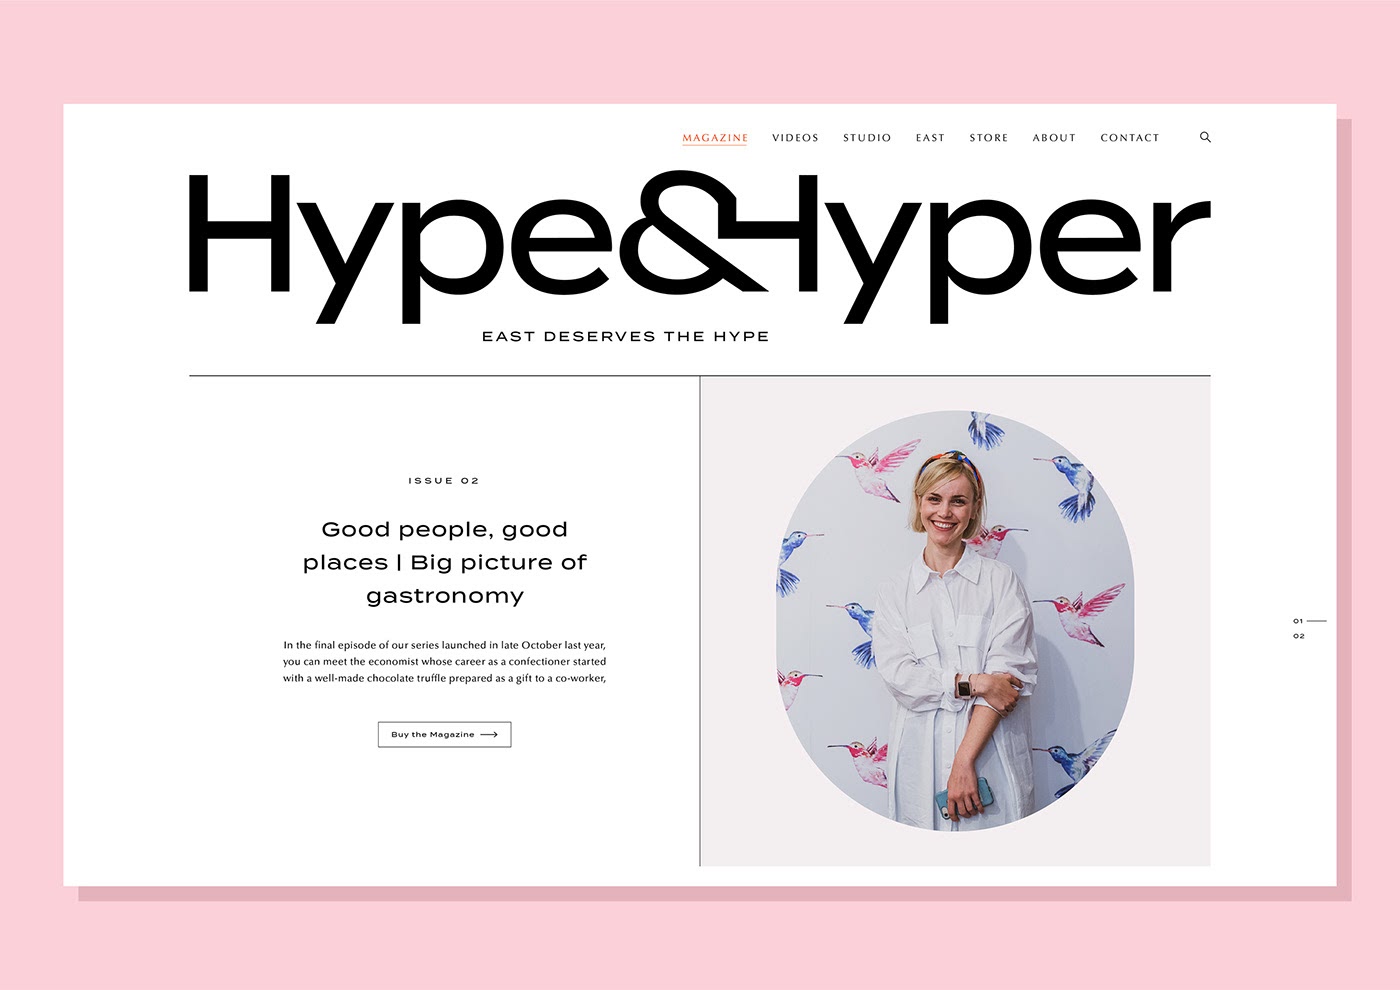 时尚生活杂志Hype&Hyper品牌形象设计